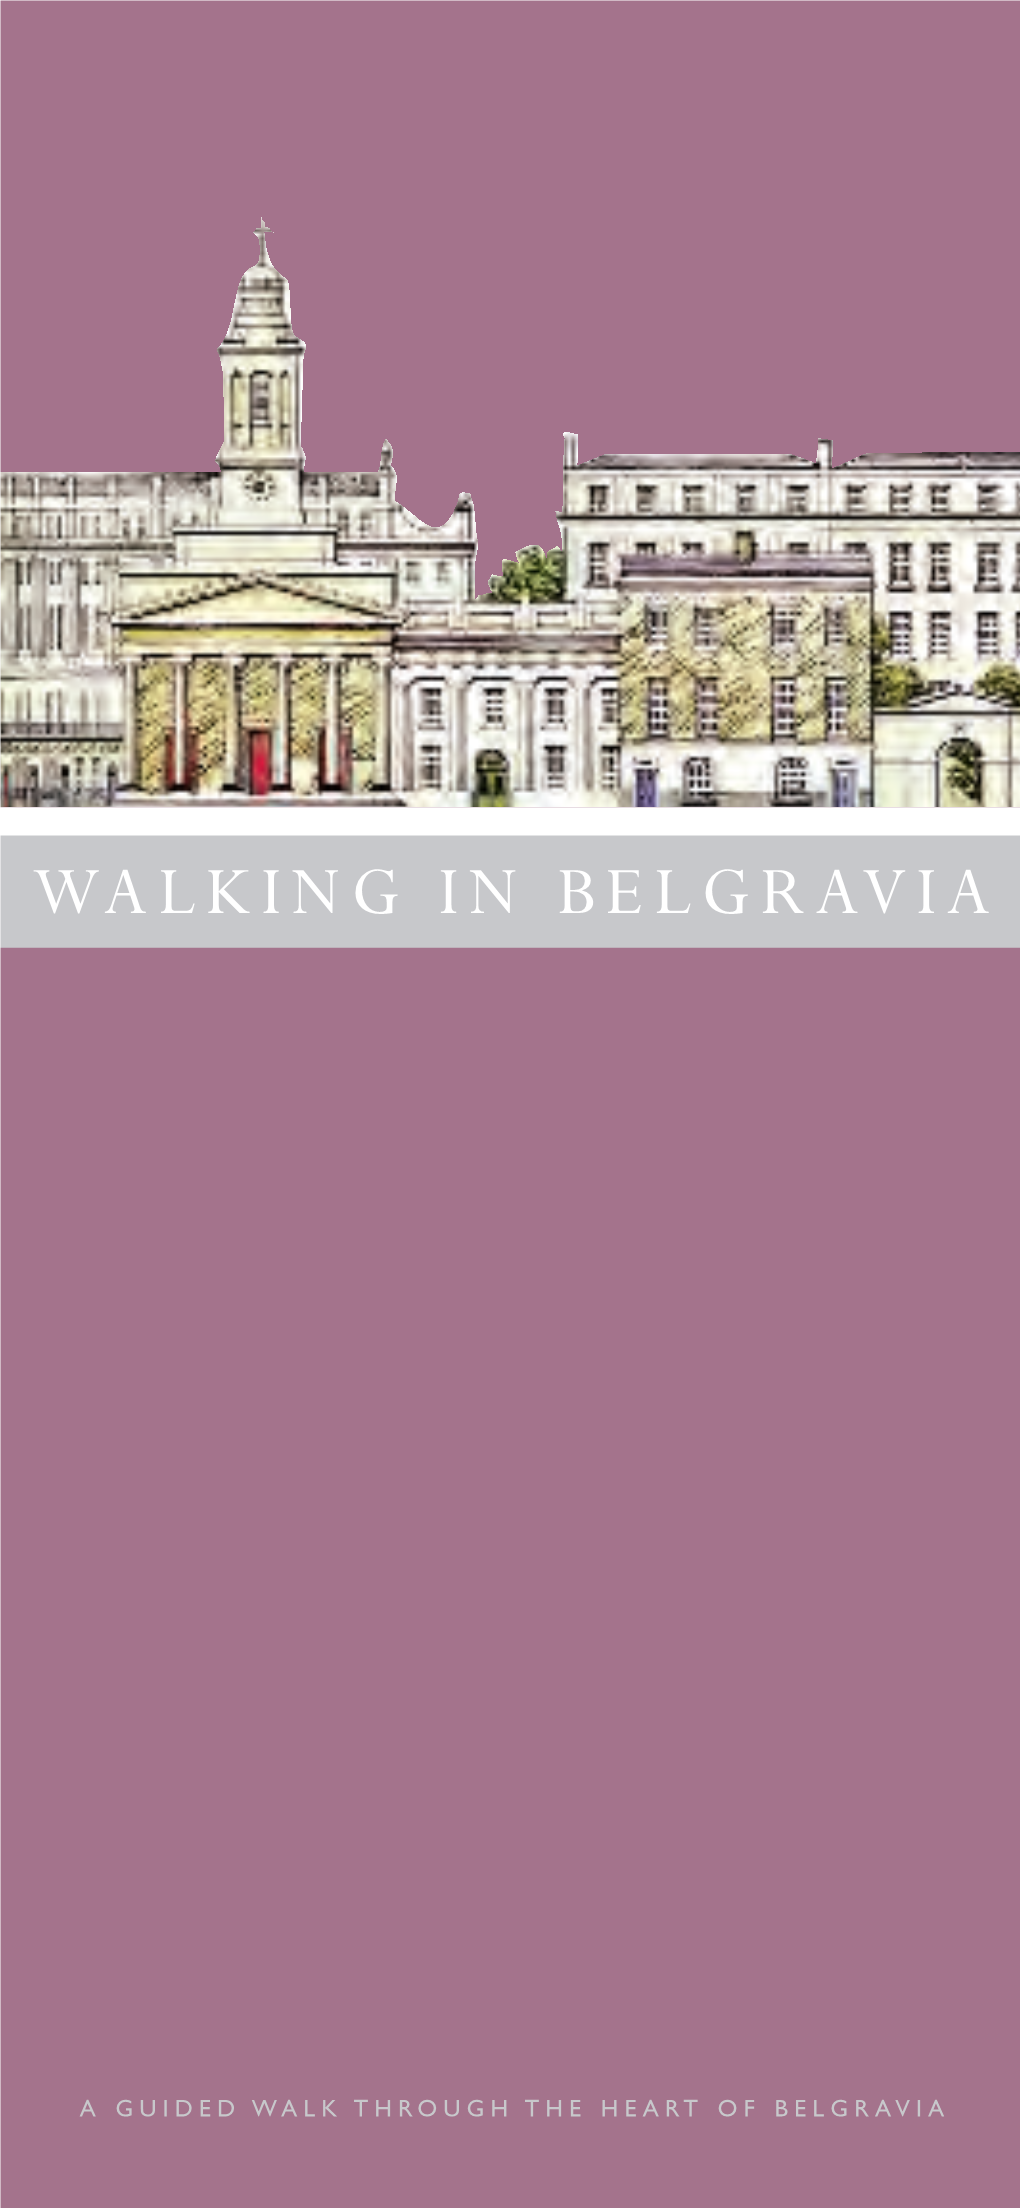 Walking in Belgravia